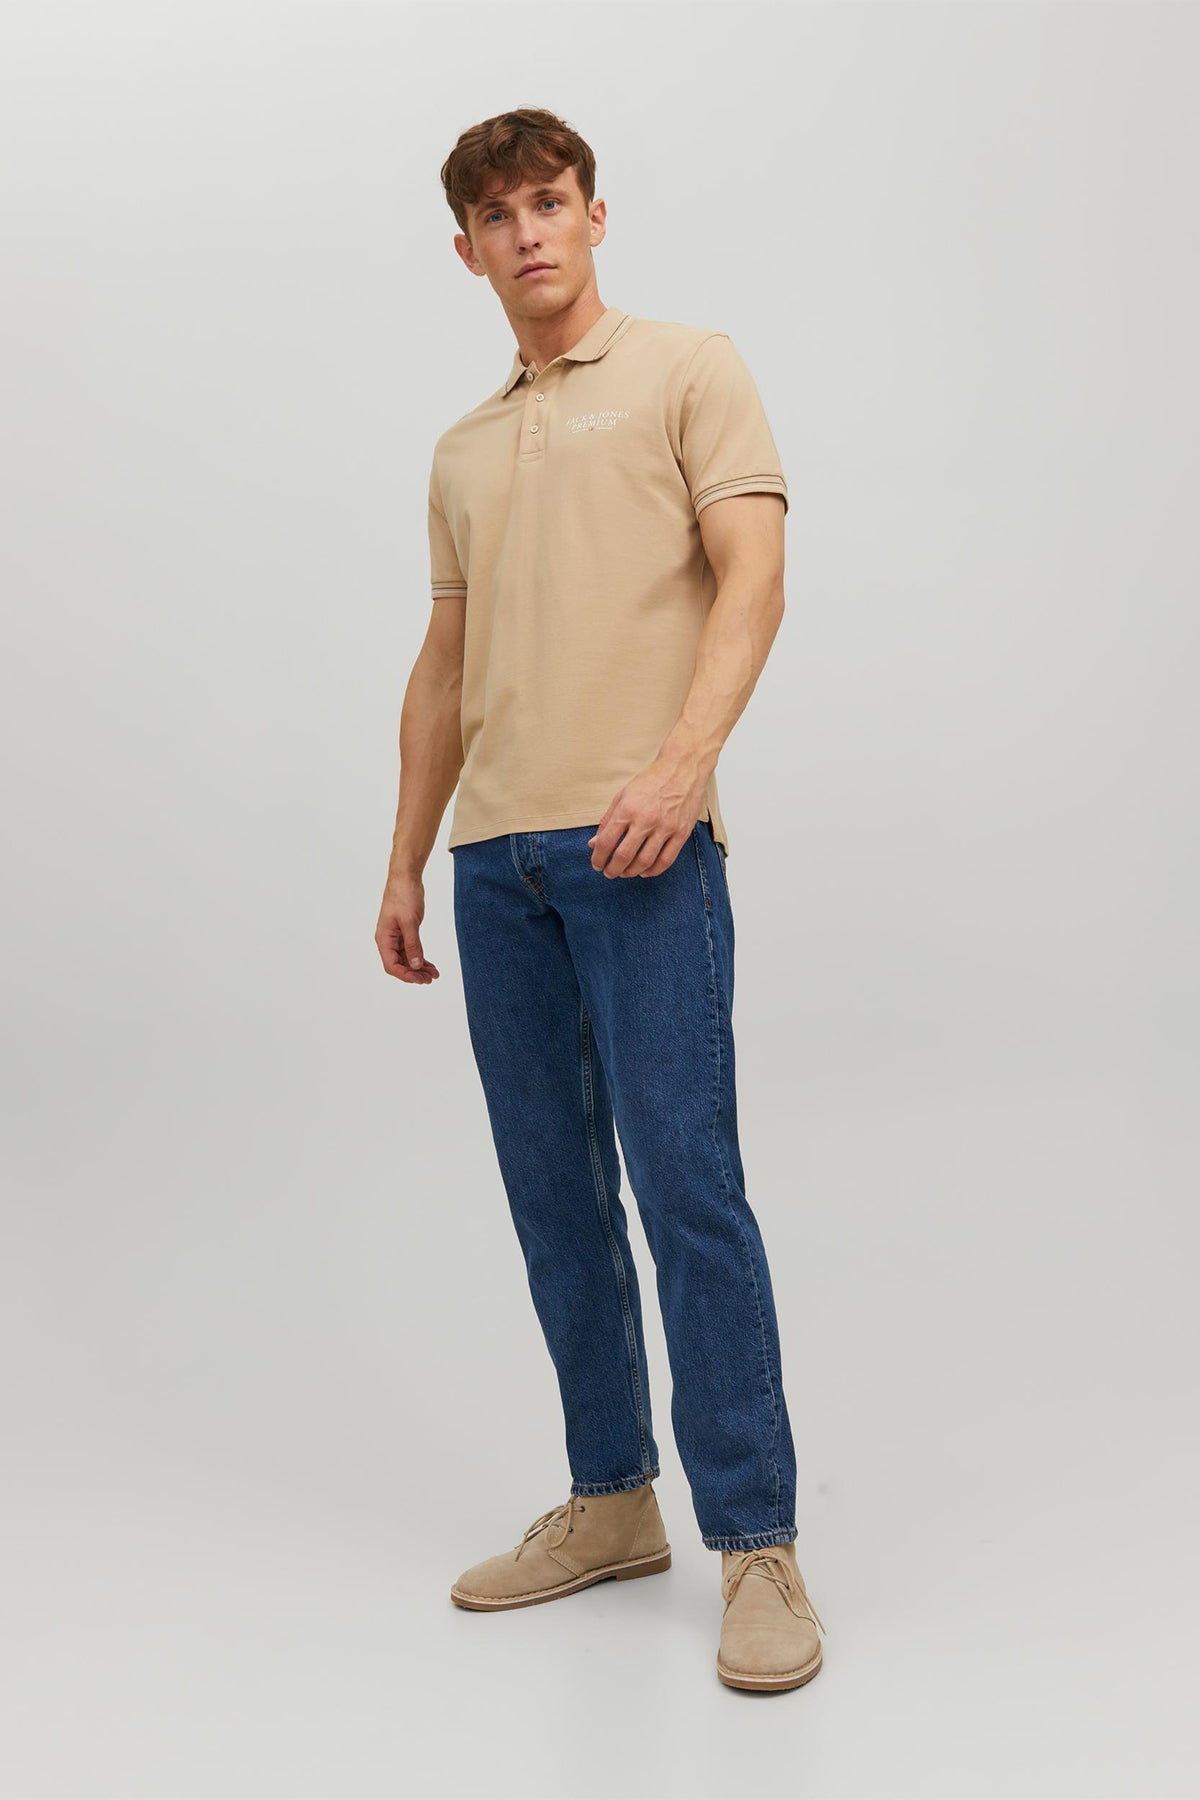 Jack & Jones Premium 100% Cotton Regular Fit Buttoned Men's Polo T Shirt - BLUE